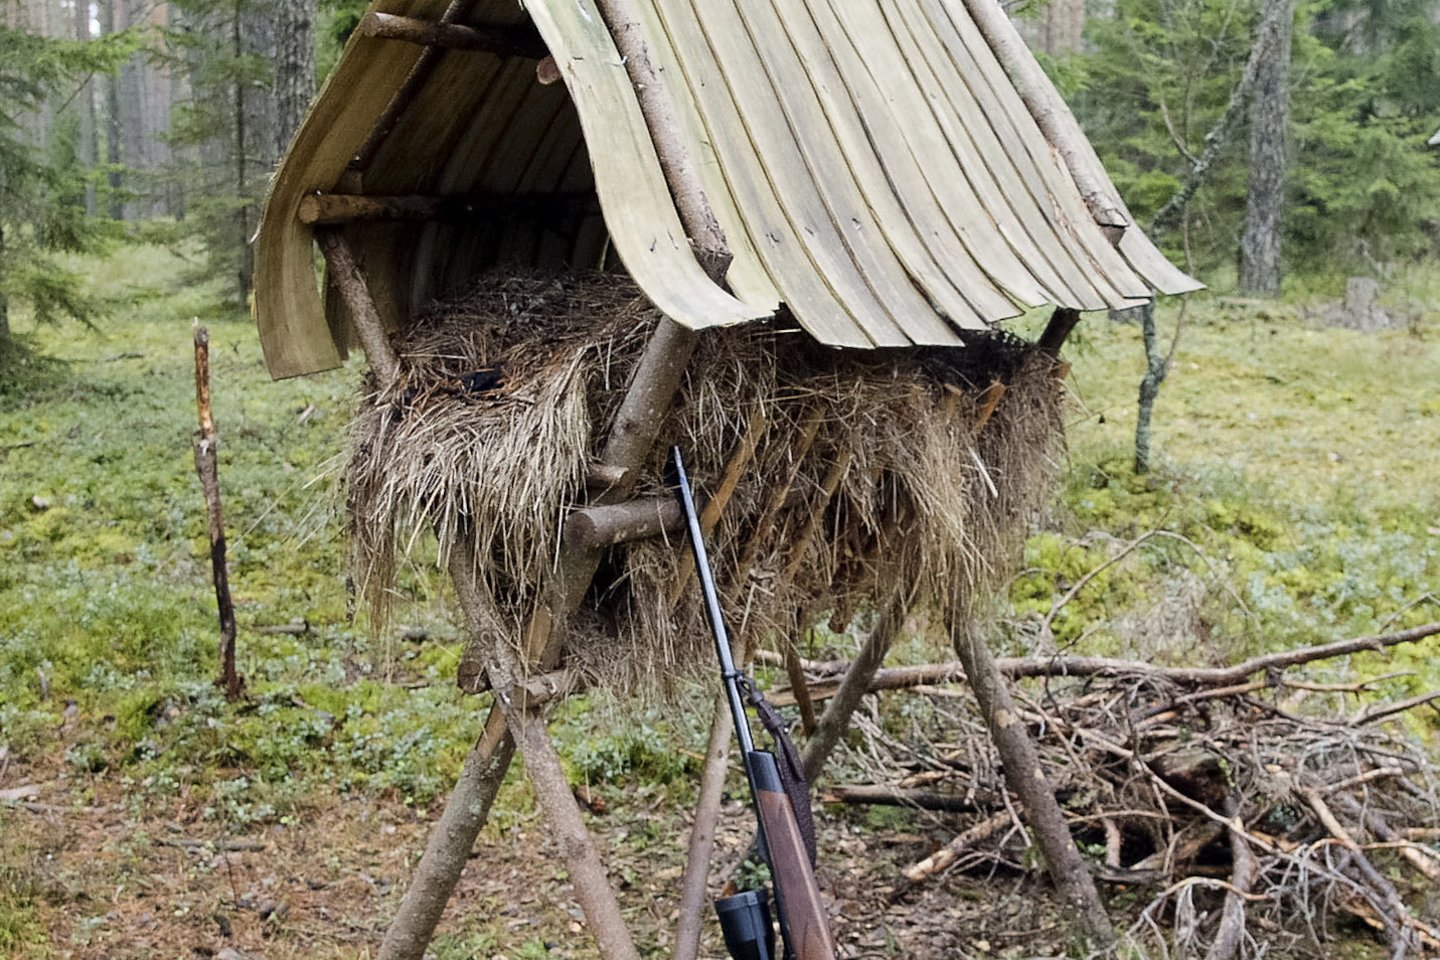  Ėdžias įrengę medžiotojai dažnai palieka ir vaizdo kamerą, kad galėtų stebėti miško žvėris, juos suskaičiuoti.<br> V.Ščiavinsko asociatyvioji nuotr.